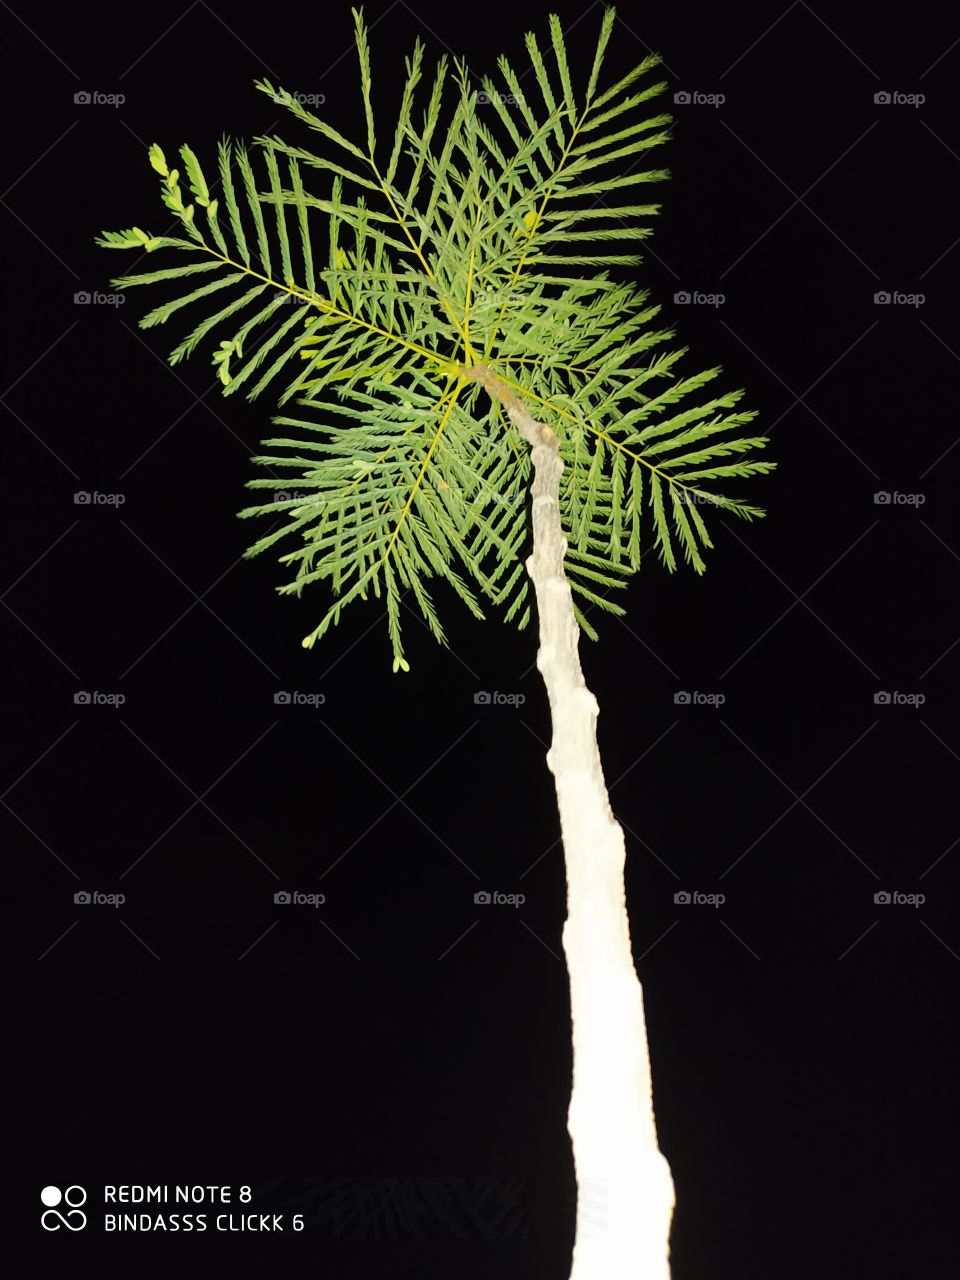 plant shot at night